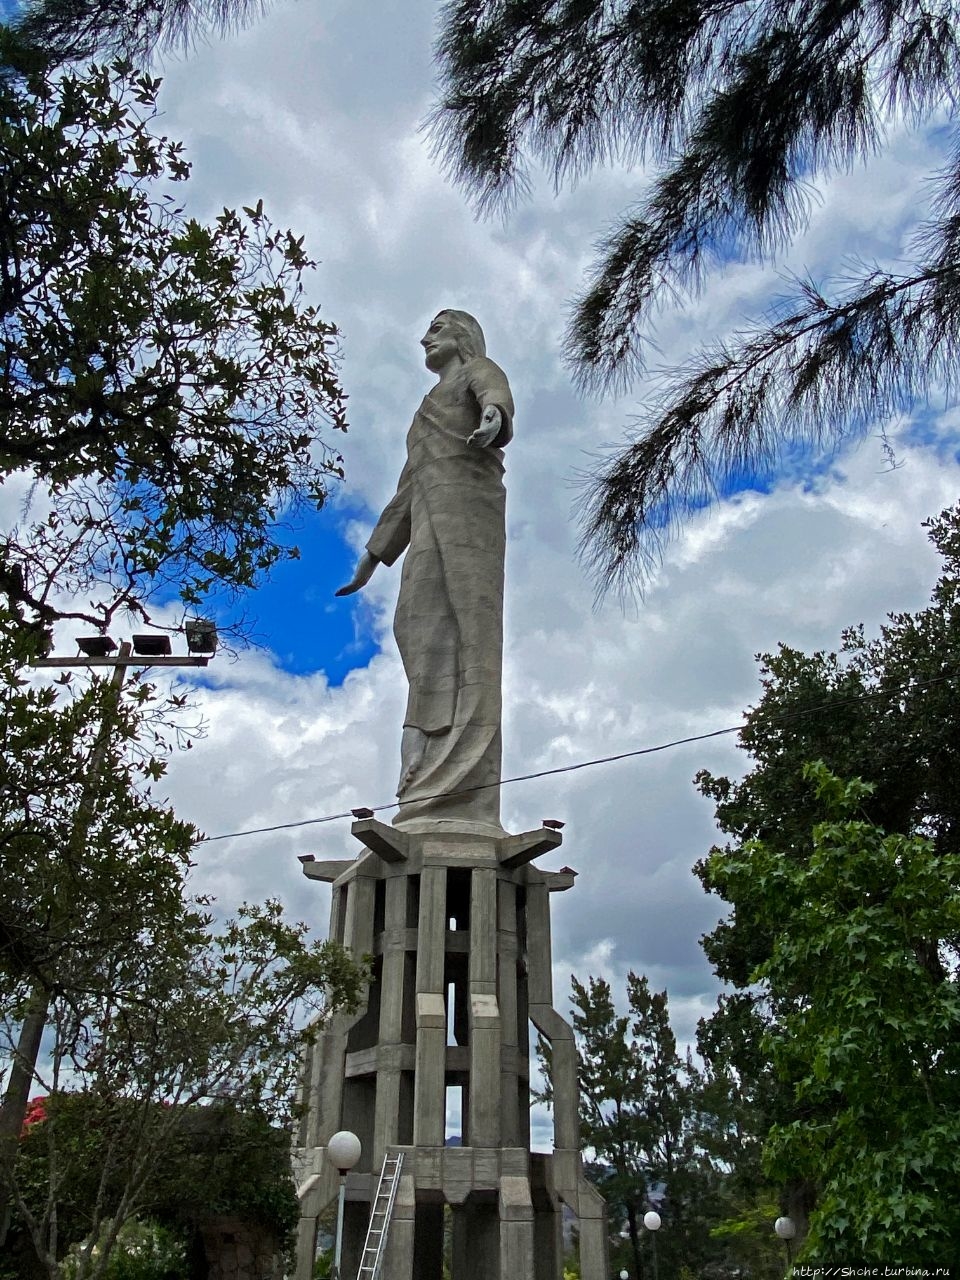 Христос в Эль-Пикачо Тегусигальпа, Гондурас